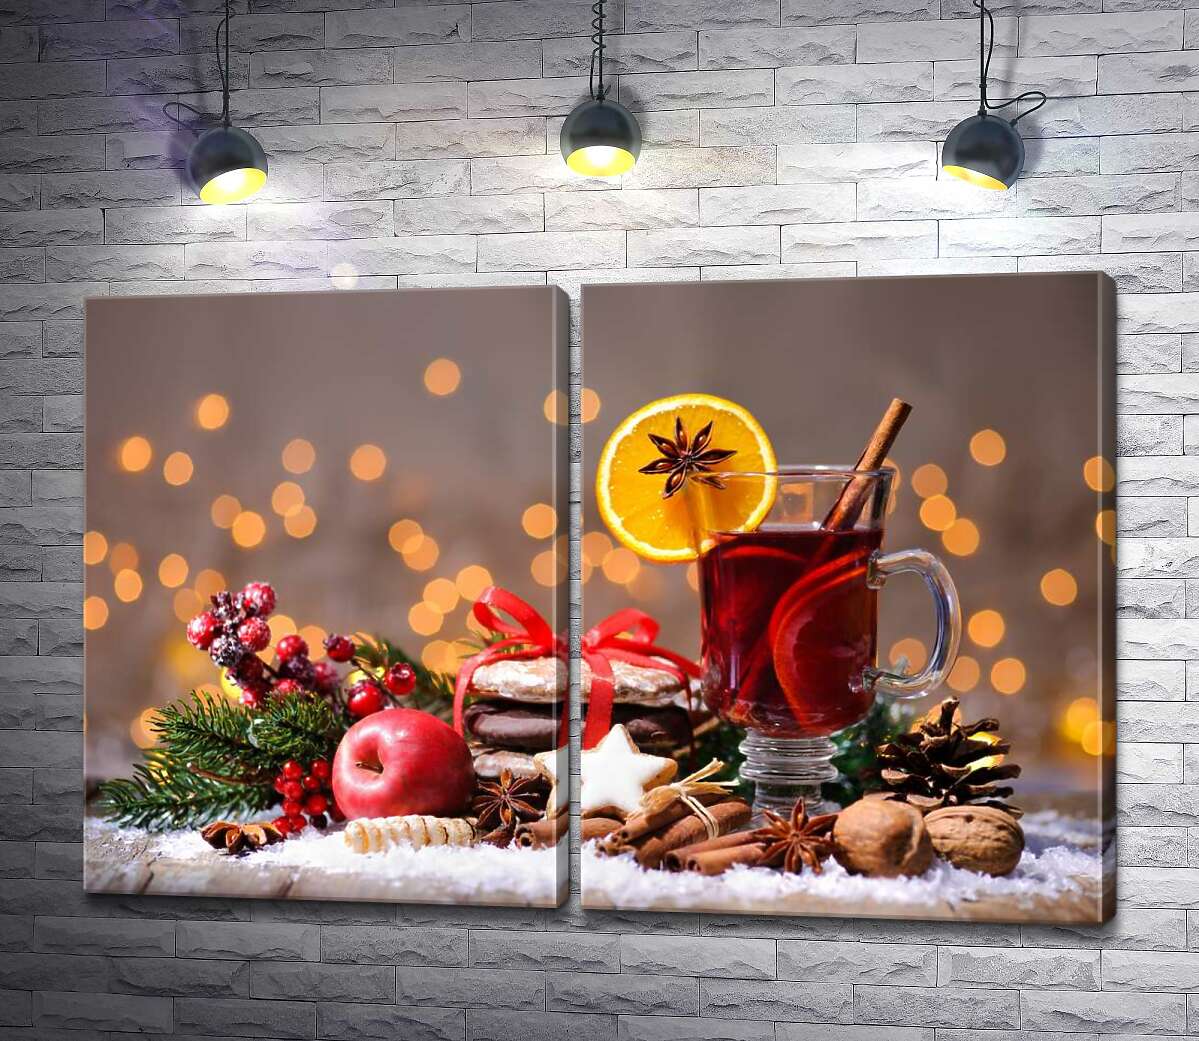 модульна картина Новорічний натюрморт: запашний глінтвейн із пакунком печива, яблуком та прянощами